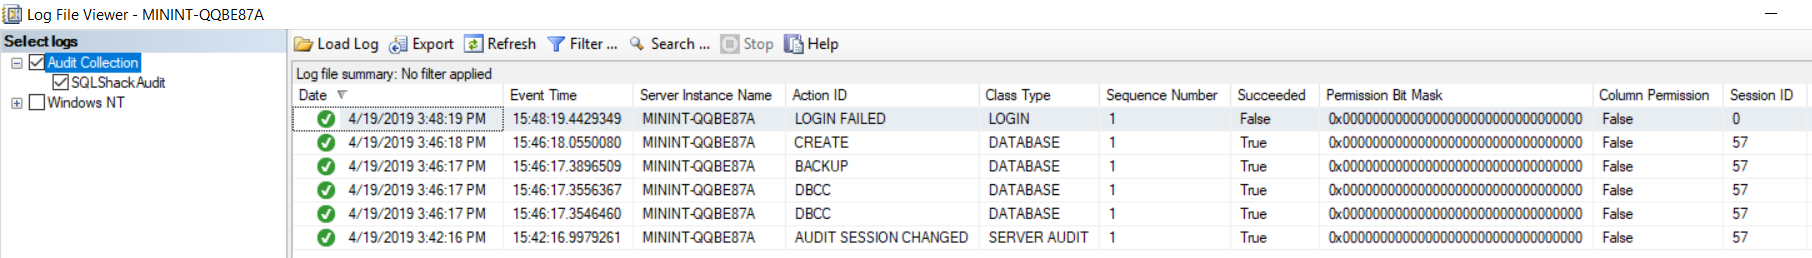 SQL Server Audit Log File Viewer 1